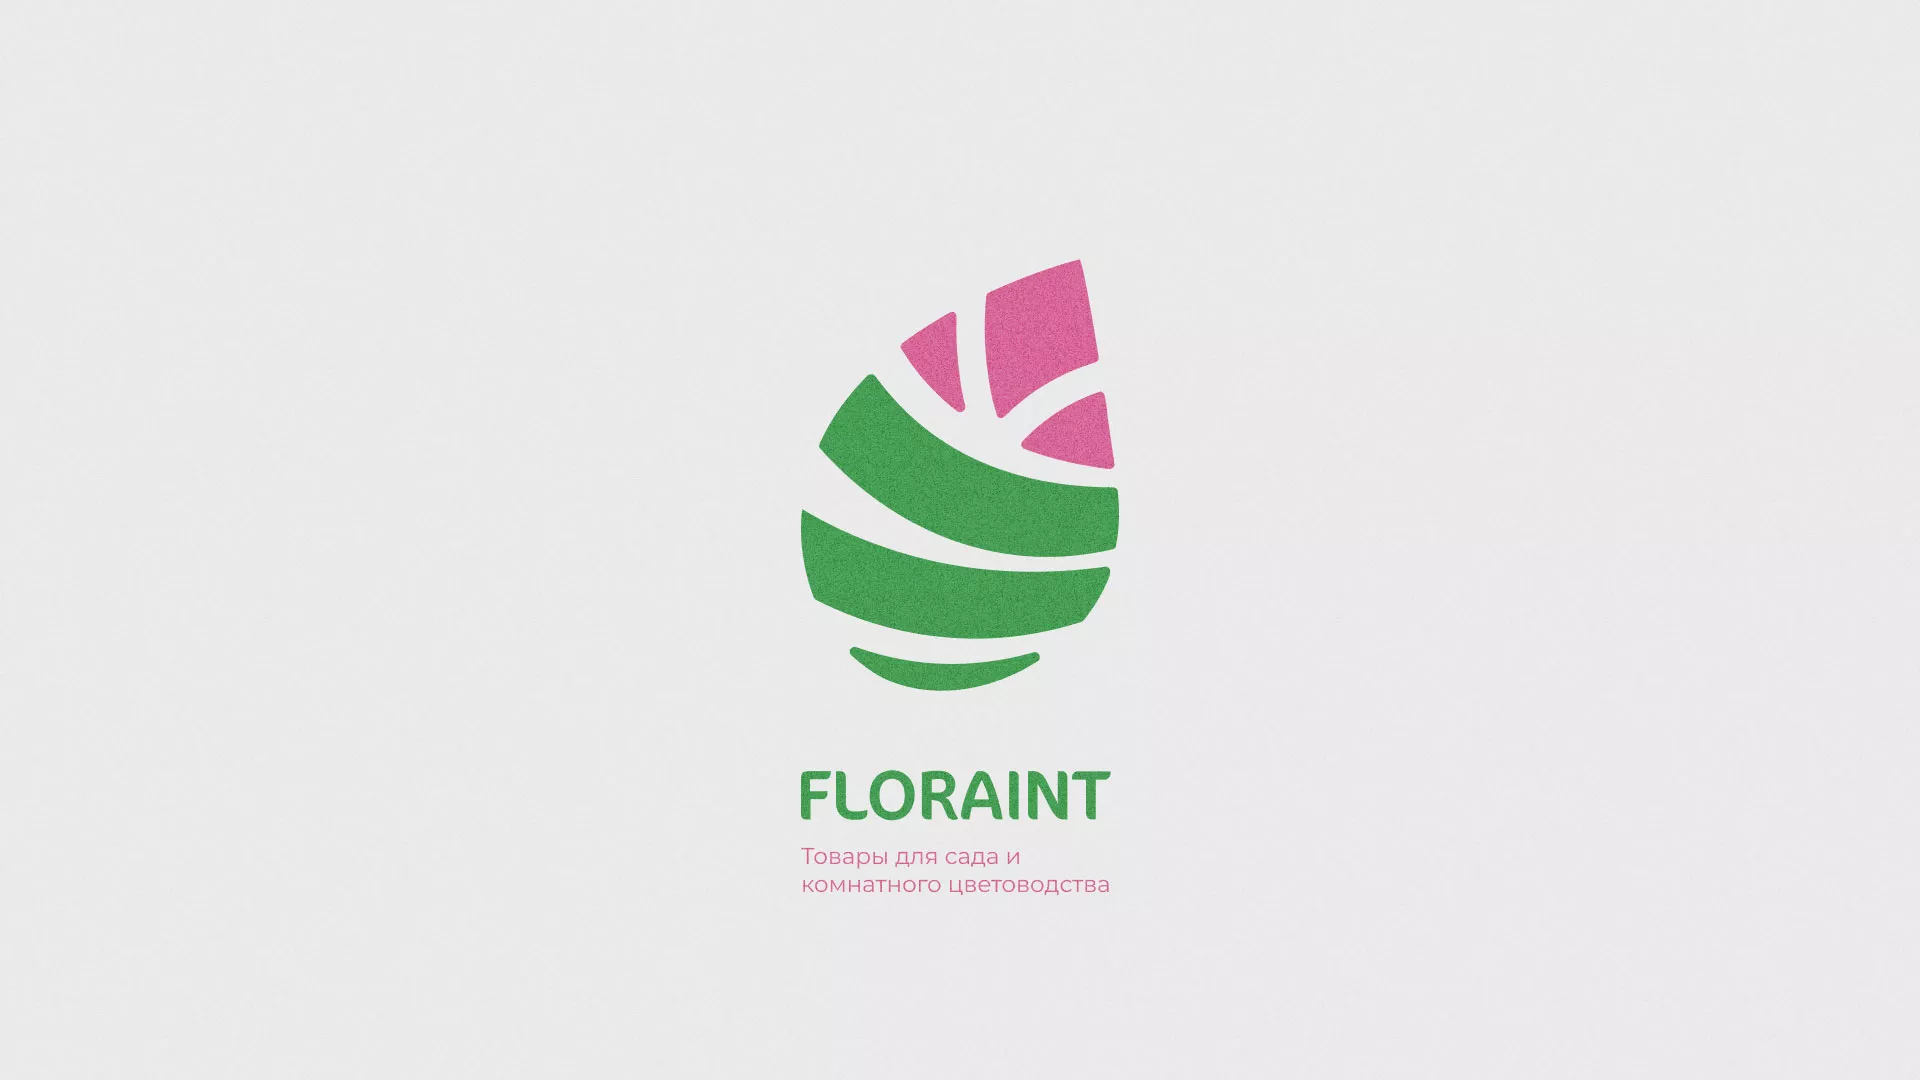 Разработка оформления профиля Instagram для магазина «Floraint» в Зиме